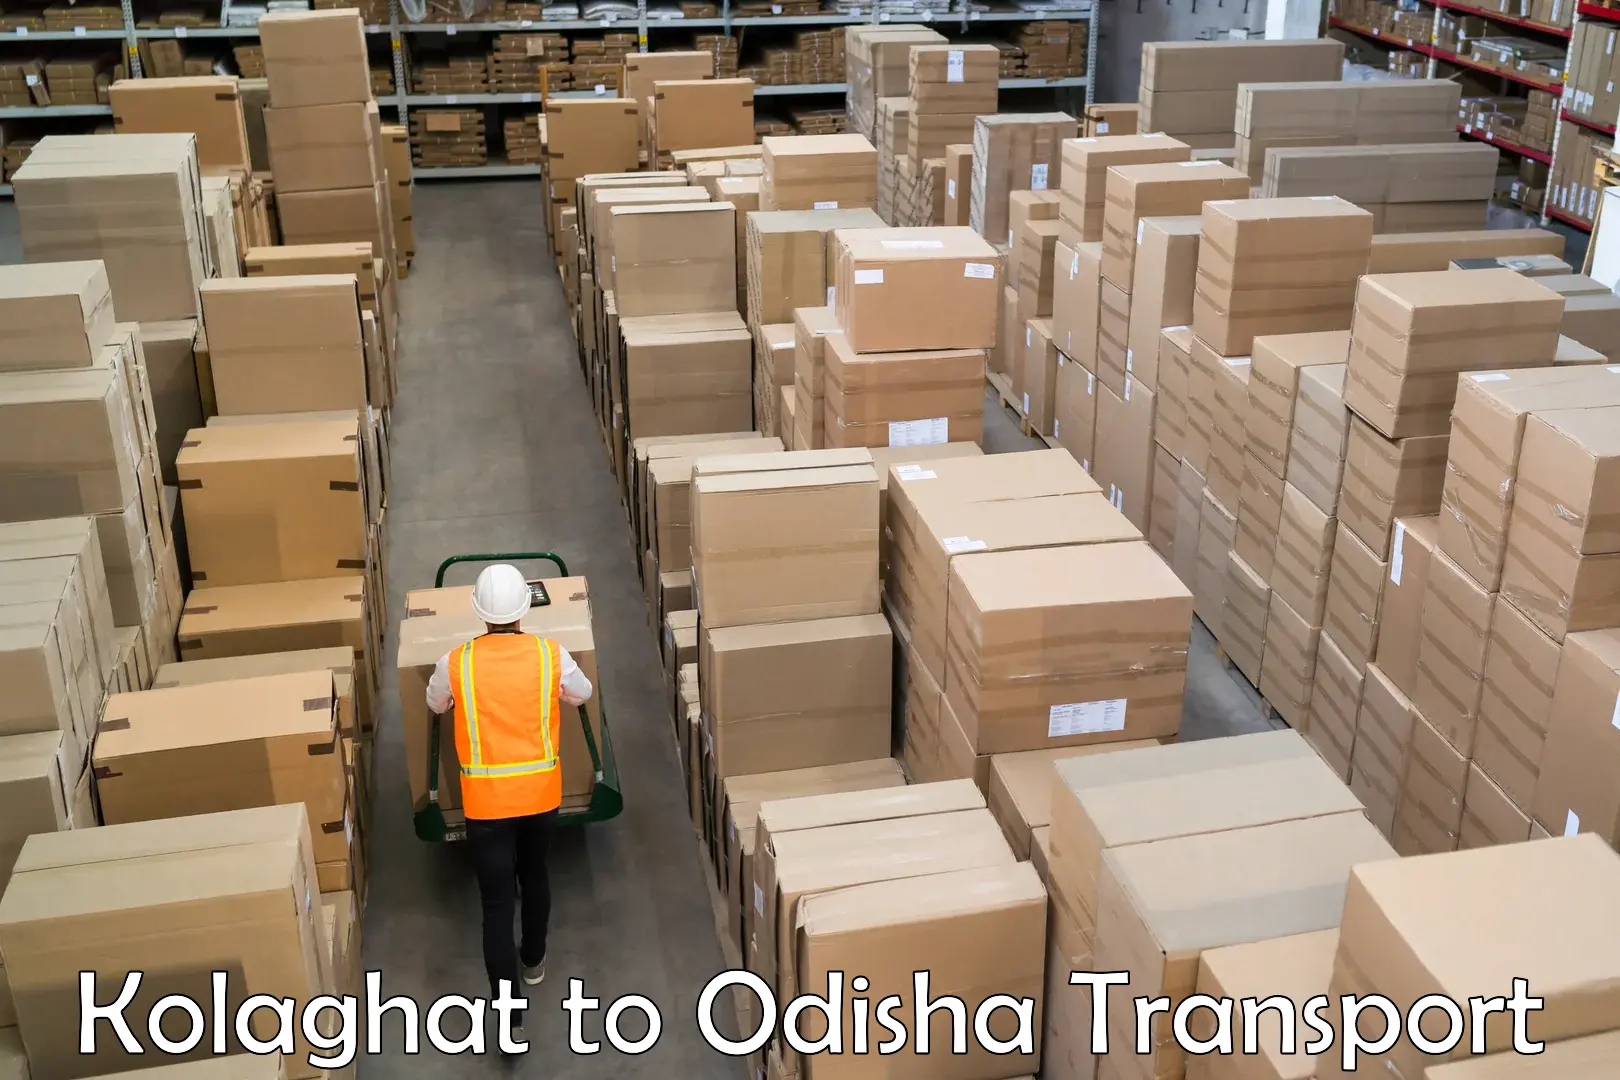 Furniture transport service Kolaghat to Sohela